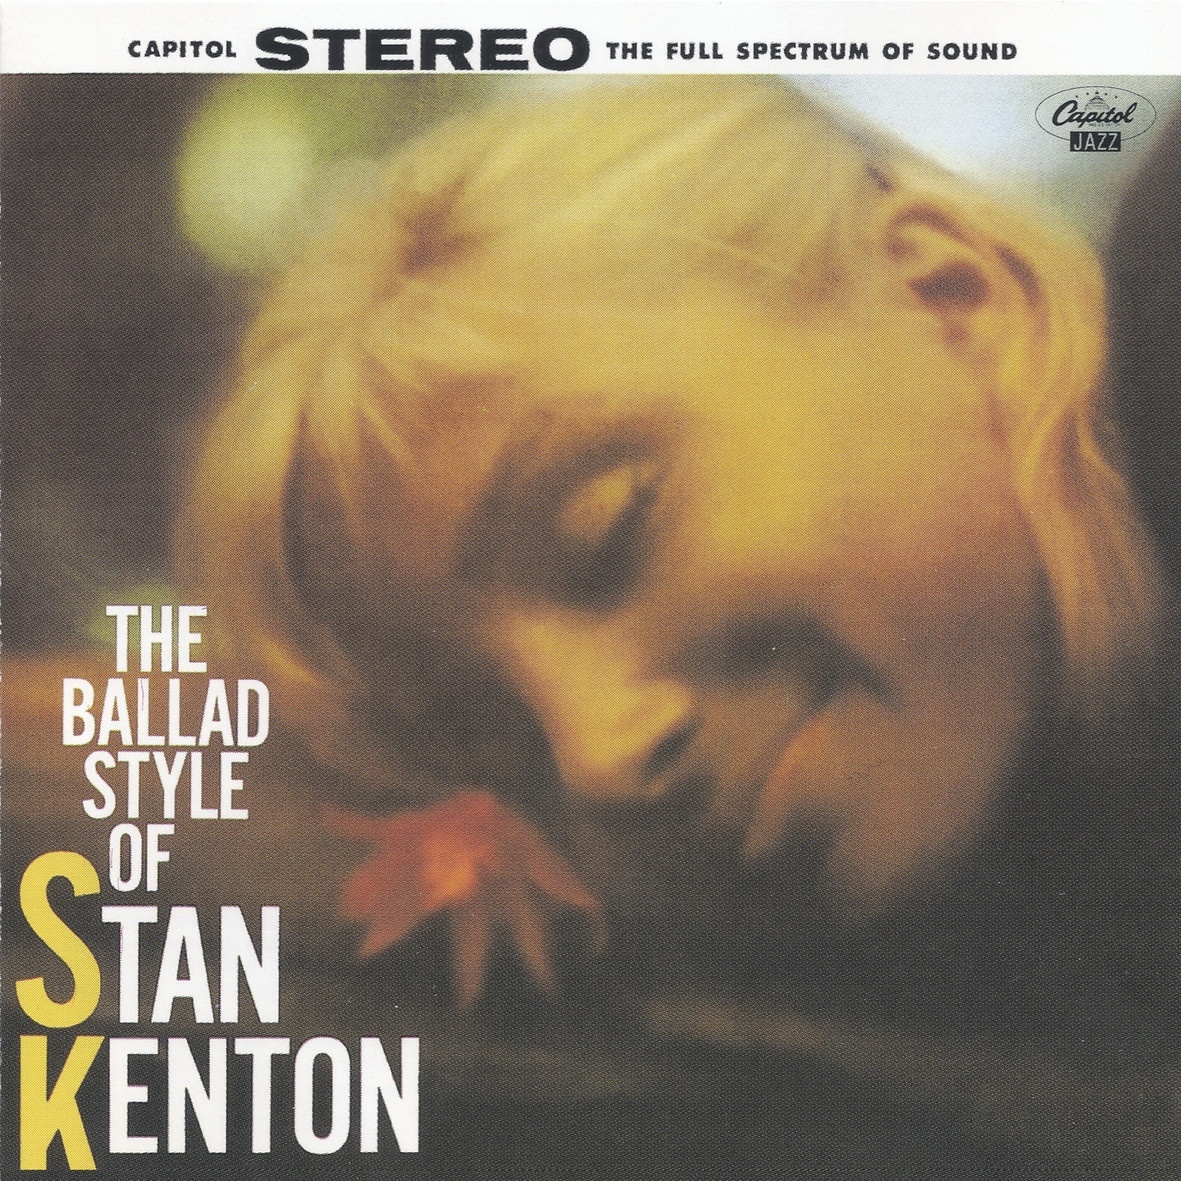 The Ballad Style Of Stan Kenton